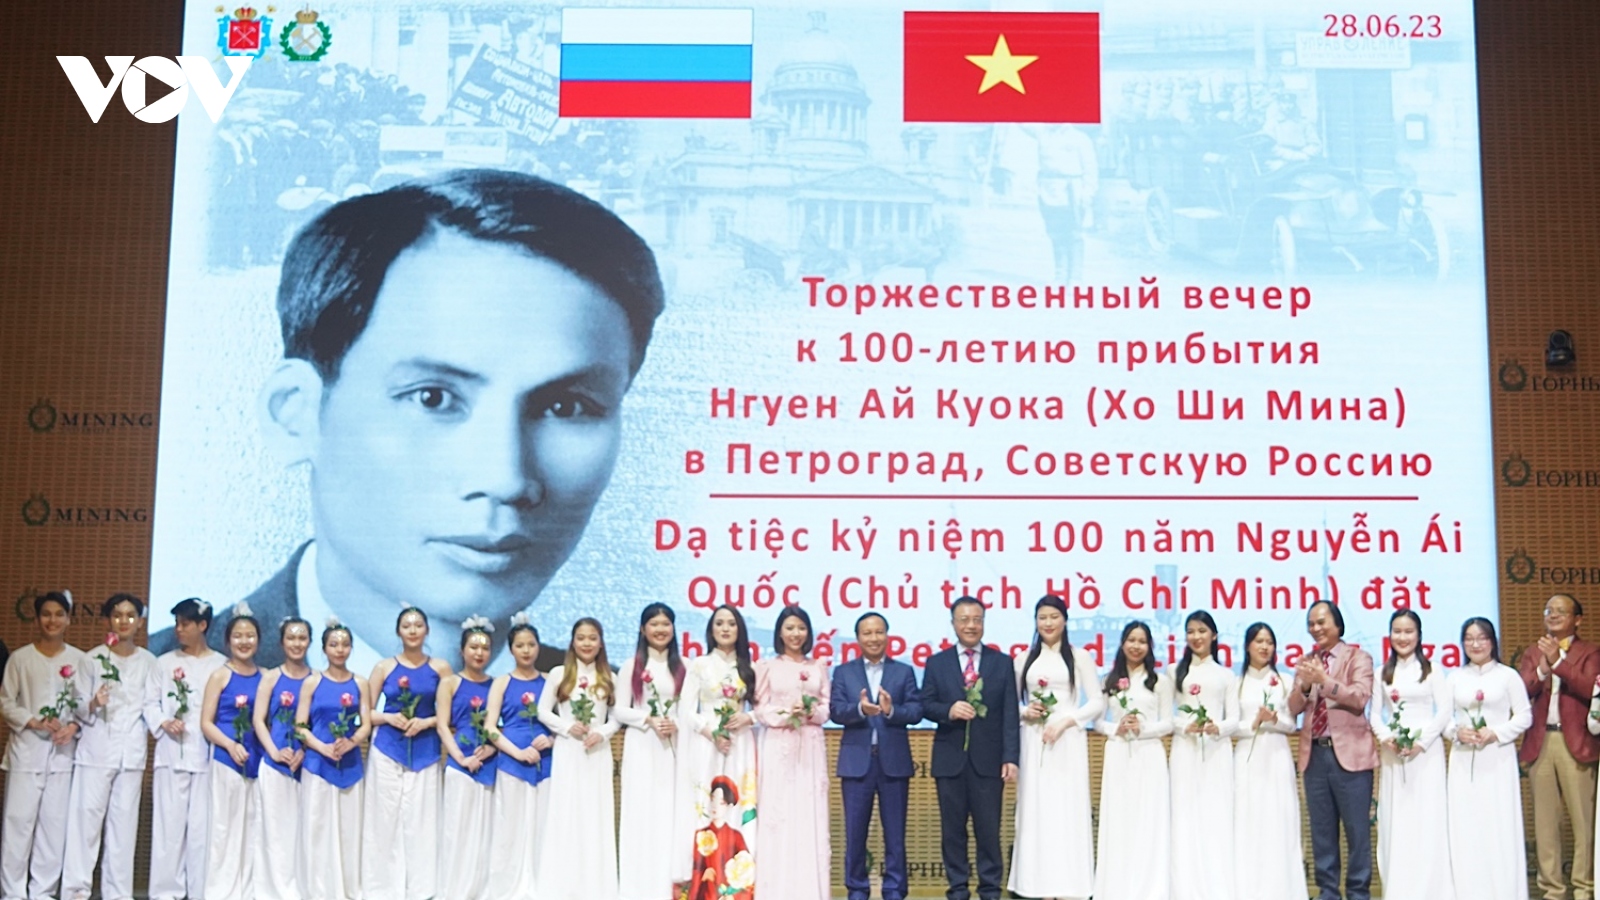 Giao lưu văn nghệ kỷ niệm 100 năm Chủ tịch Hồ Chí Minh lần đầu tiên đến Nga